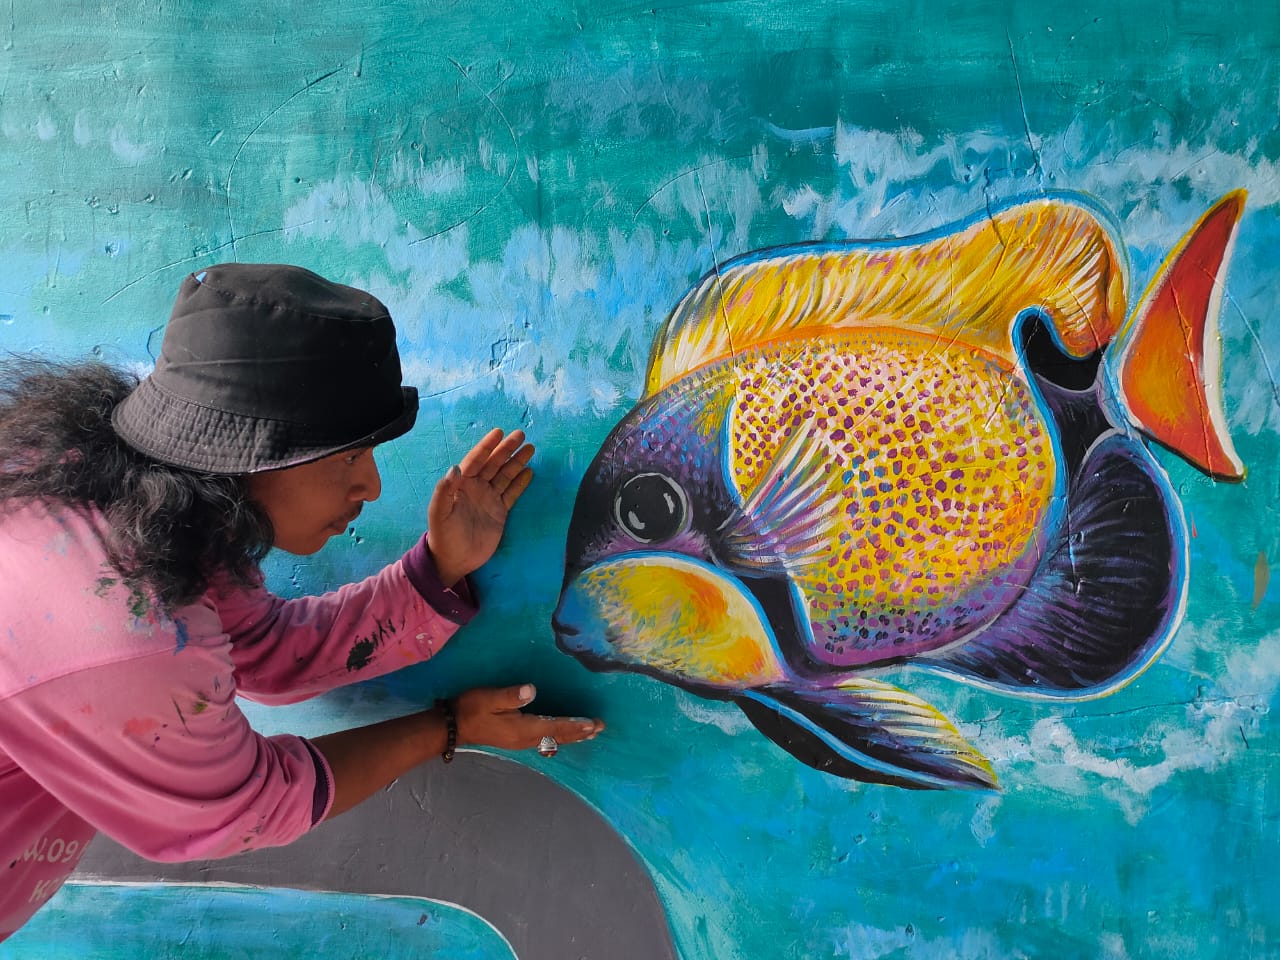 Seniman yang melukis di tembok kampung-kampung tematik yang ada di Kota Tangerang.